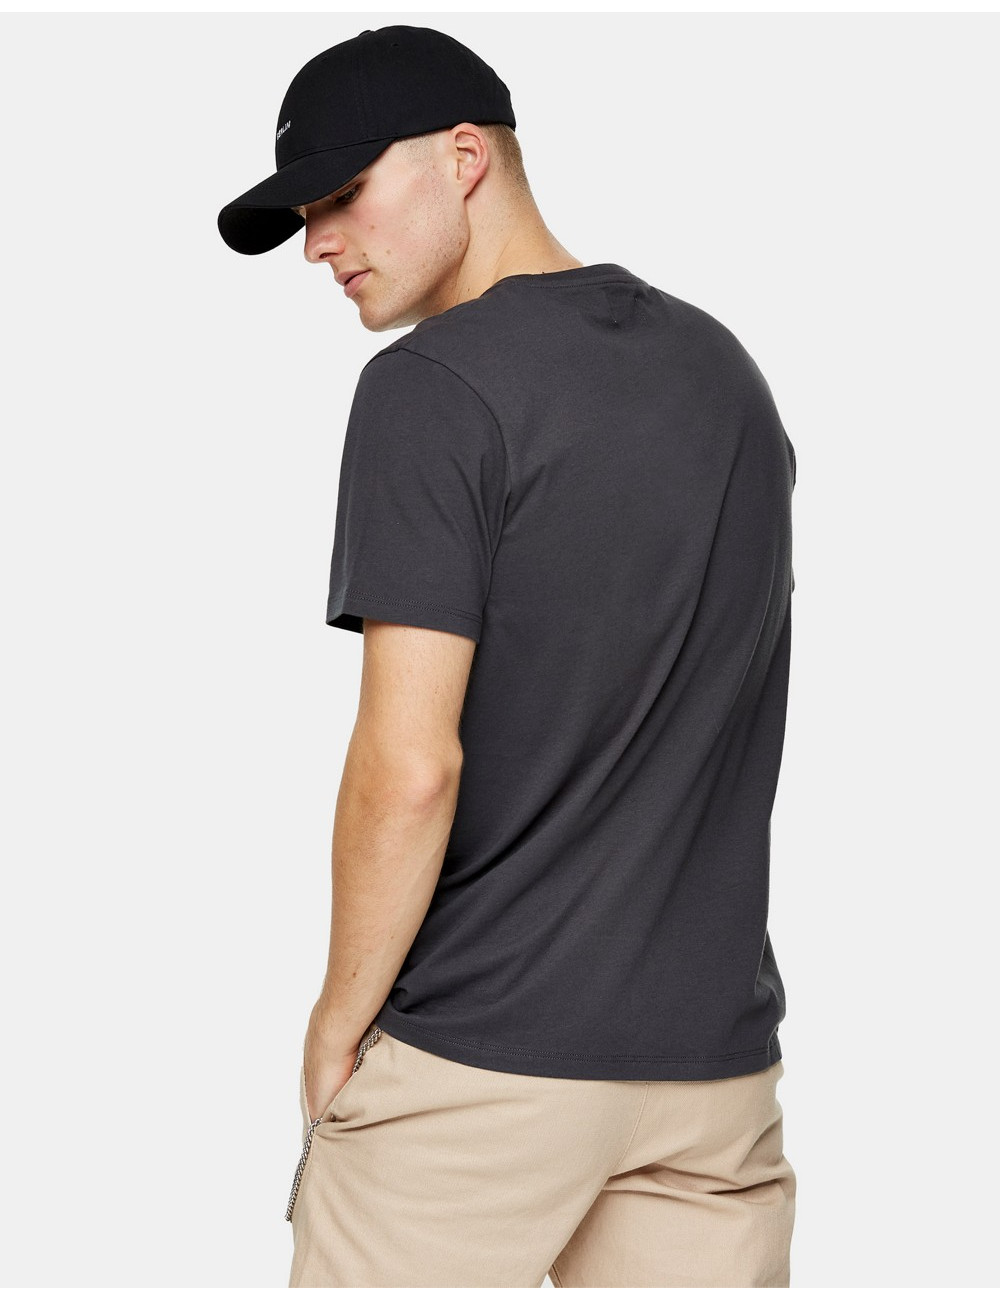 Topman classic t-shirt in grey